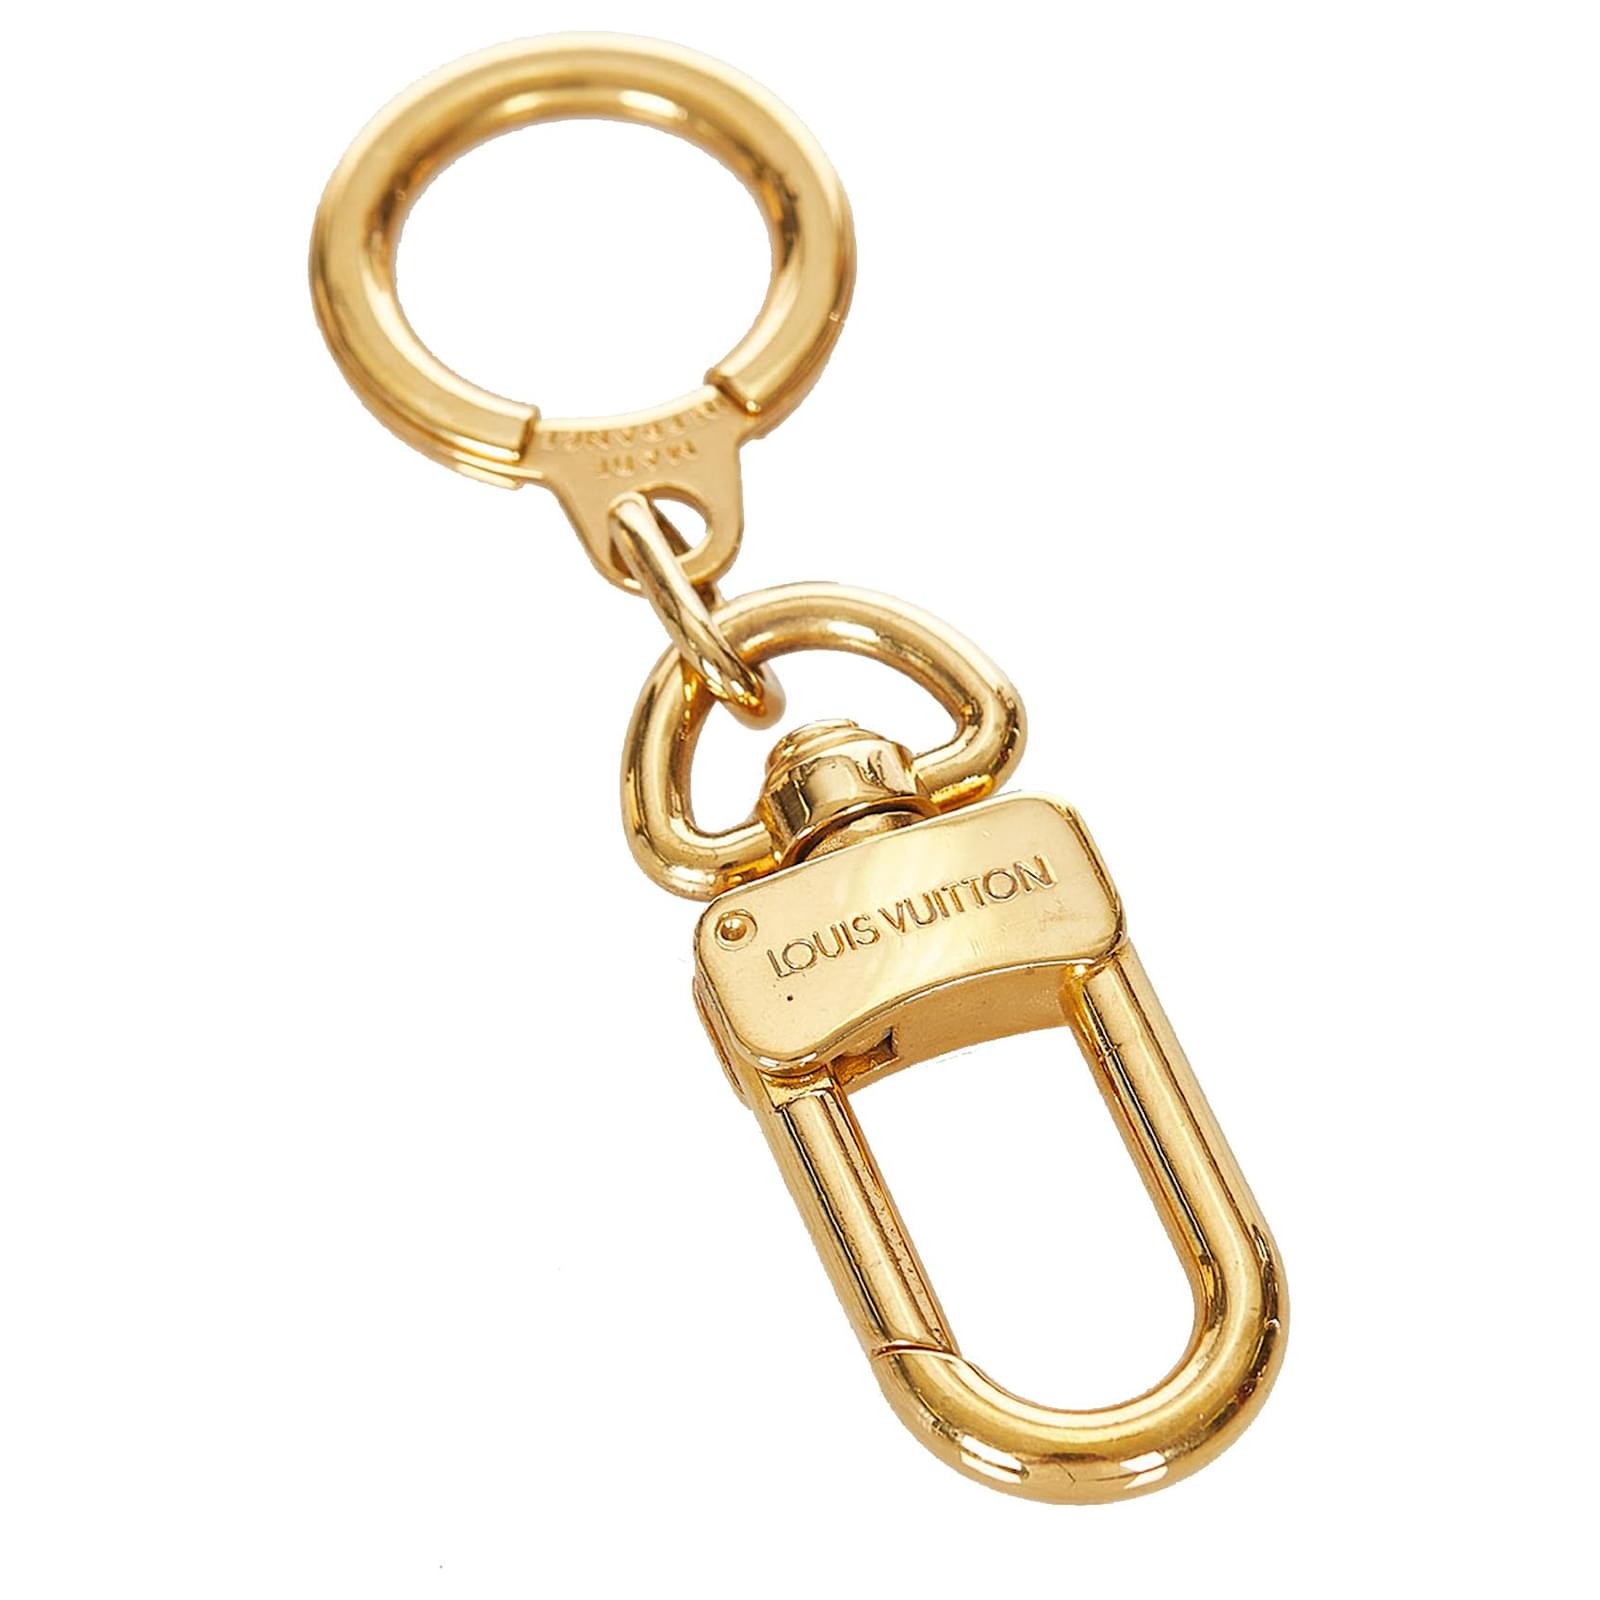 Louis Vuitton Bolt Key Holder - Gold Keychains, Accessories